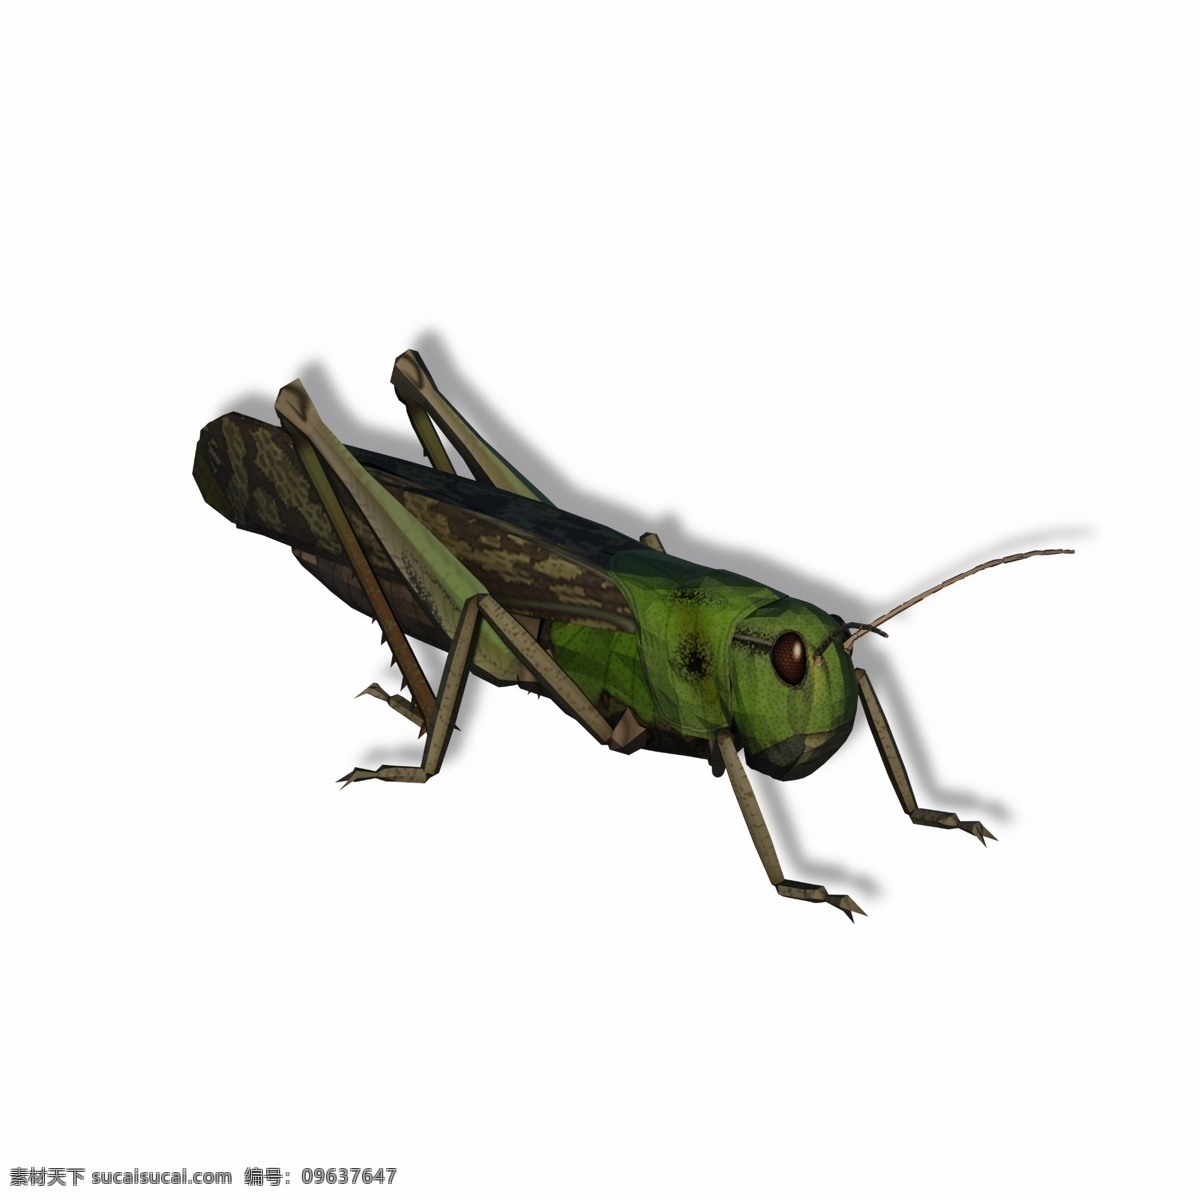 翠绿色 蝗虫 害虫 蚱蜢 昆虫 虫子